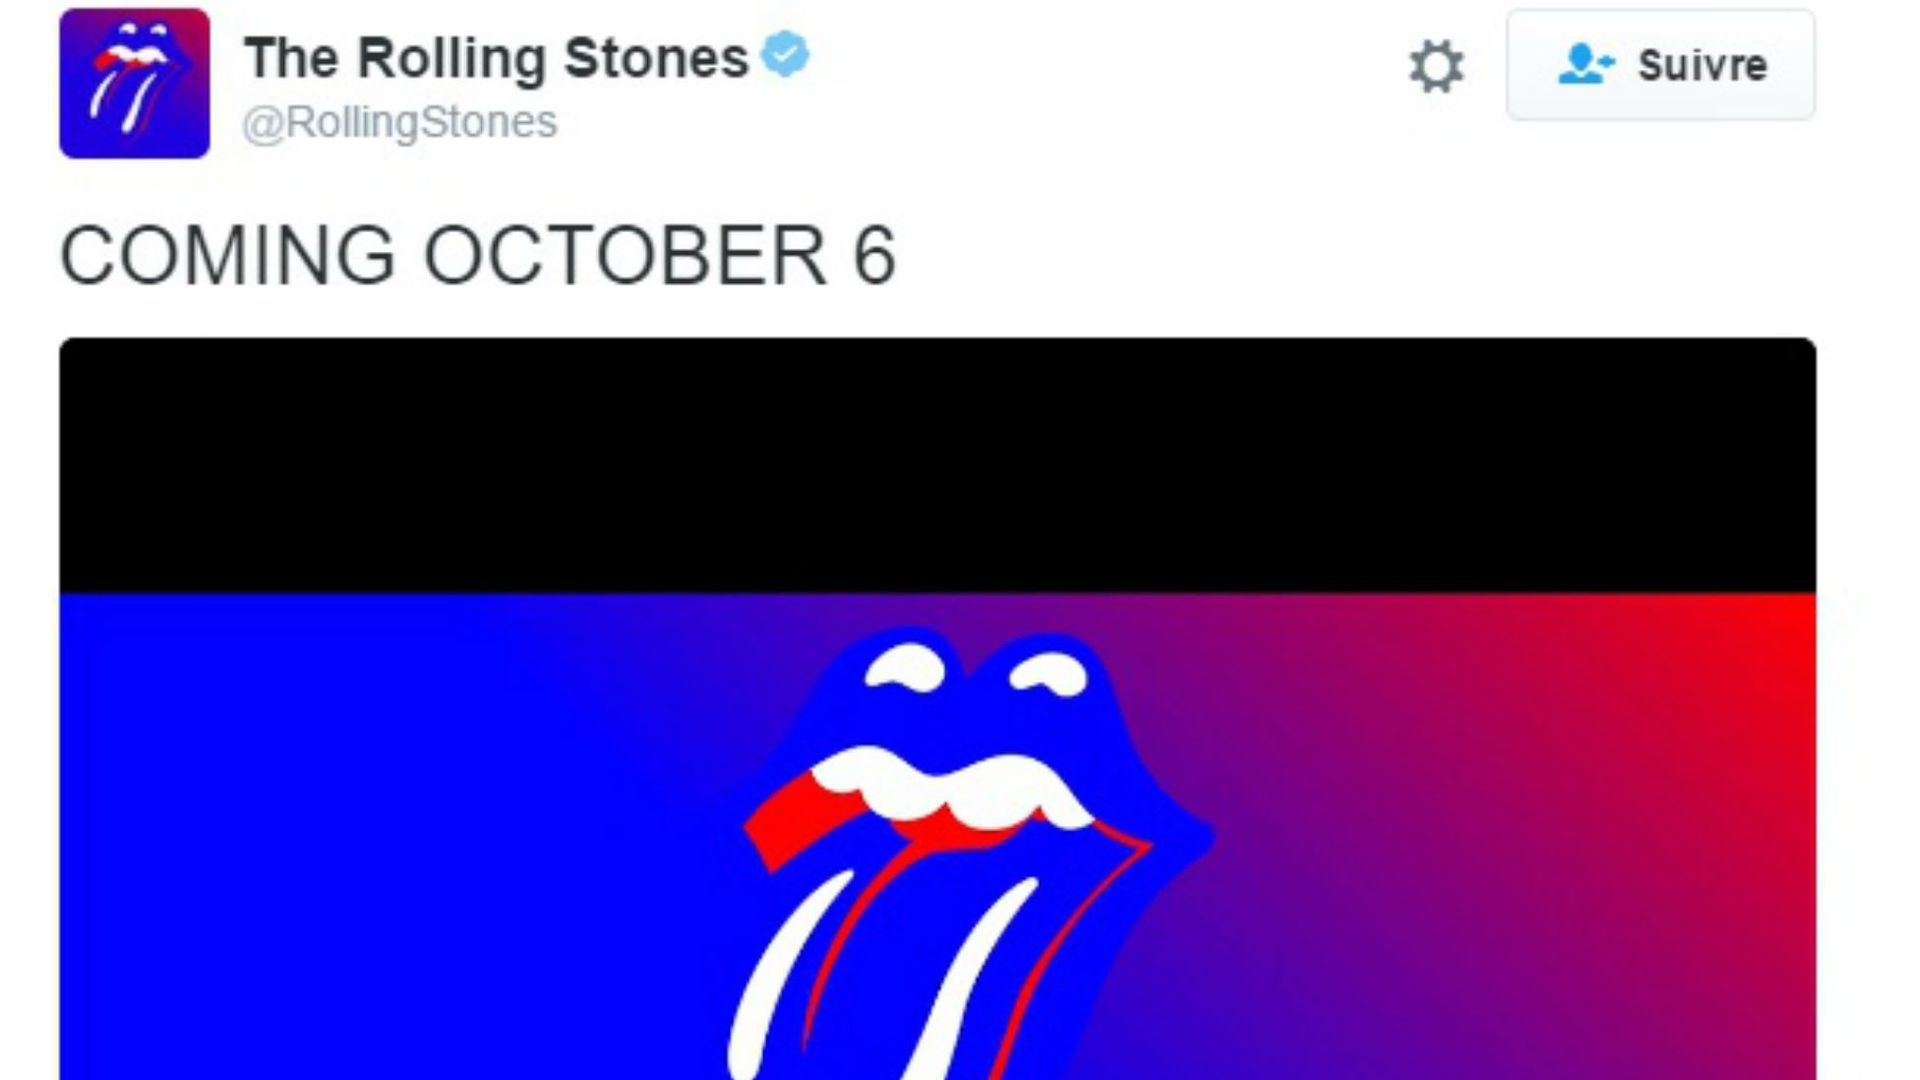 Les Rolling Stones pourraient dévoiler leur nouvel album jeudi 6 octobre